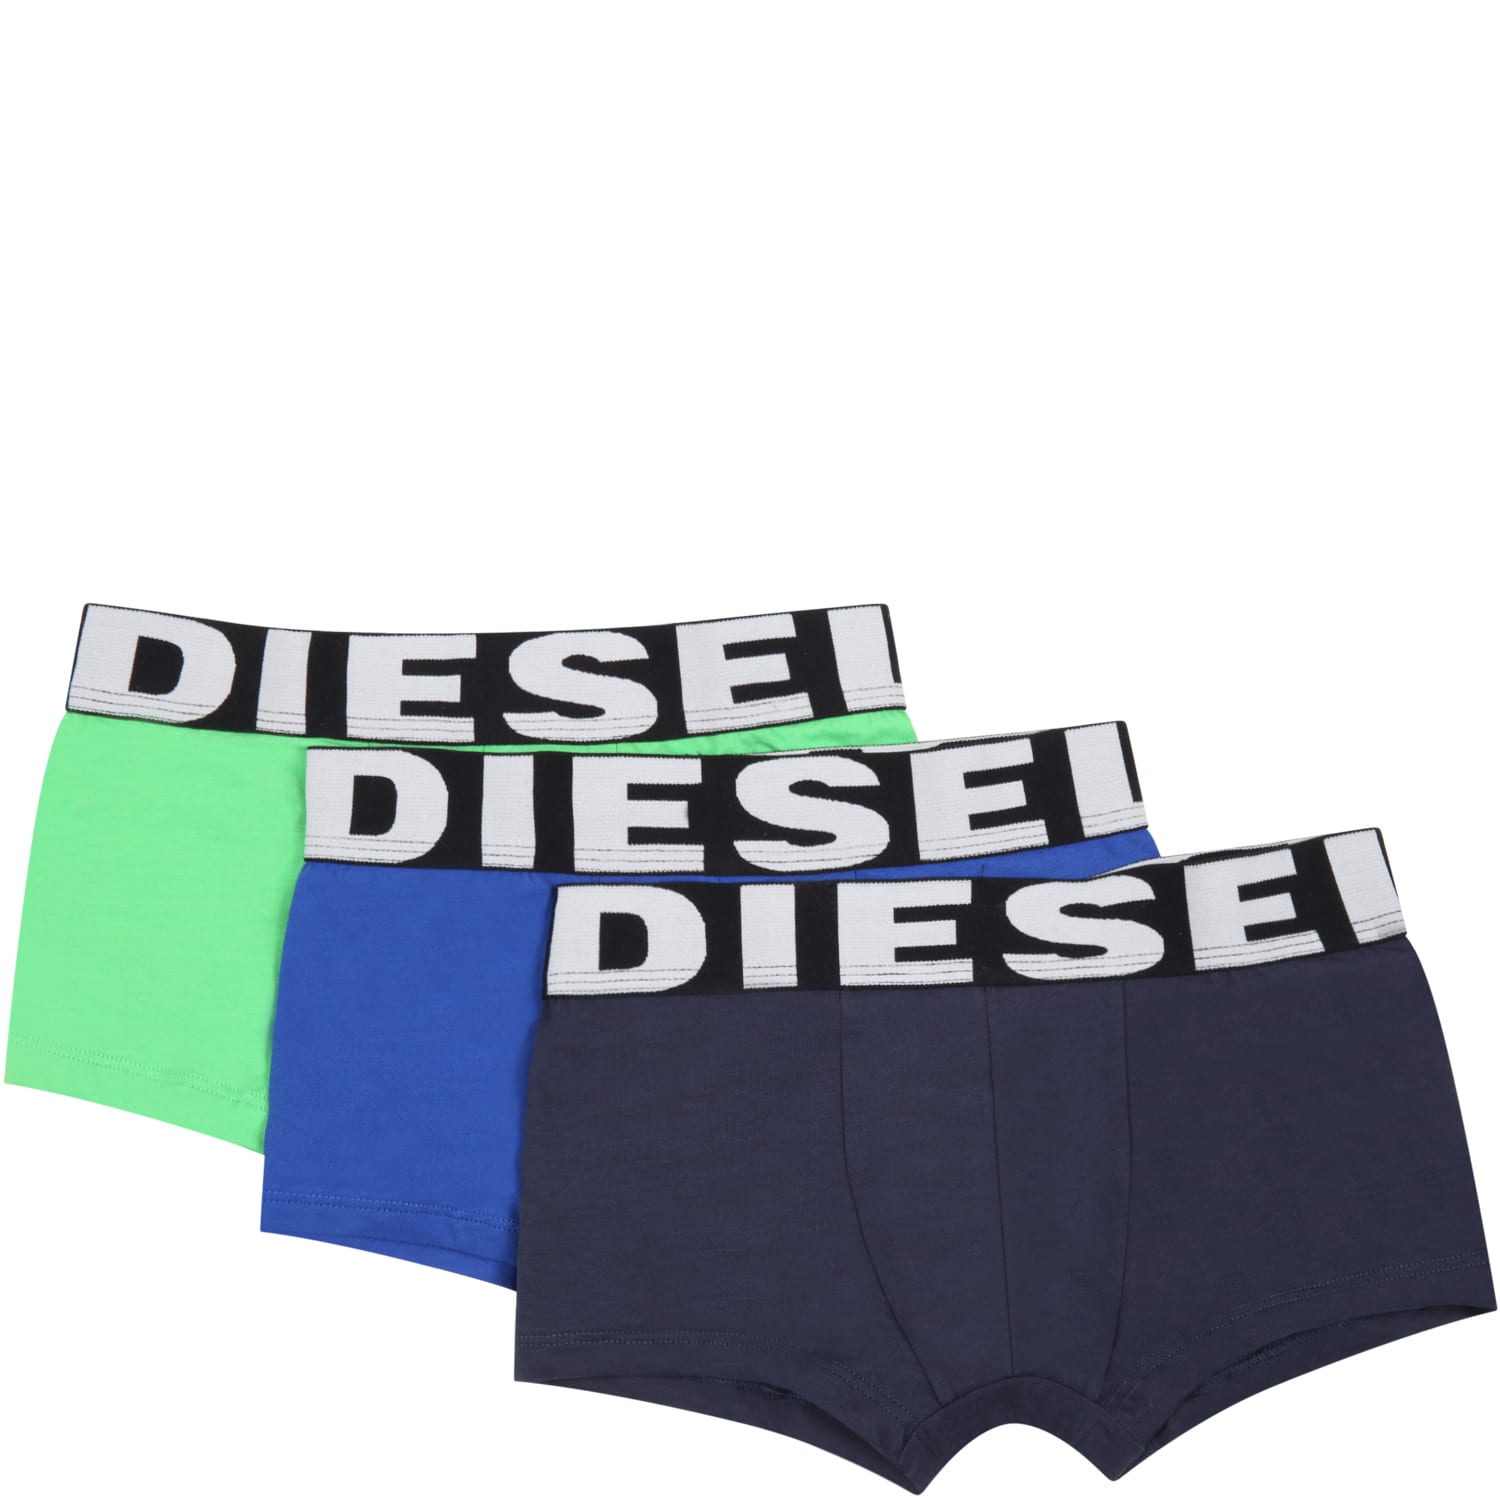 Diesel Multicolor Set For Boy